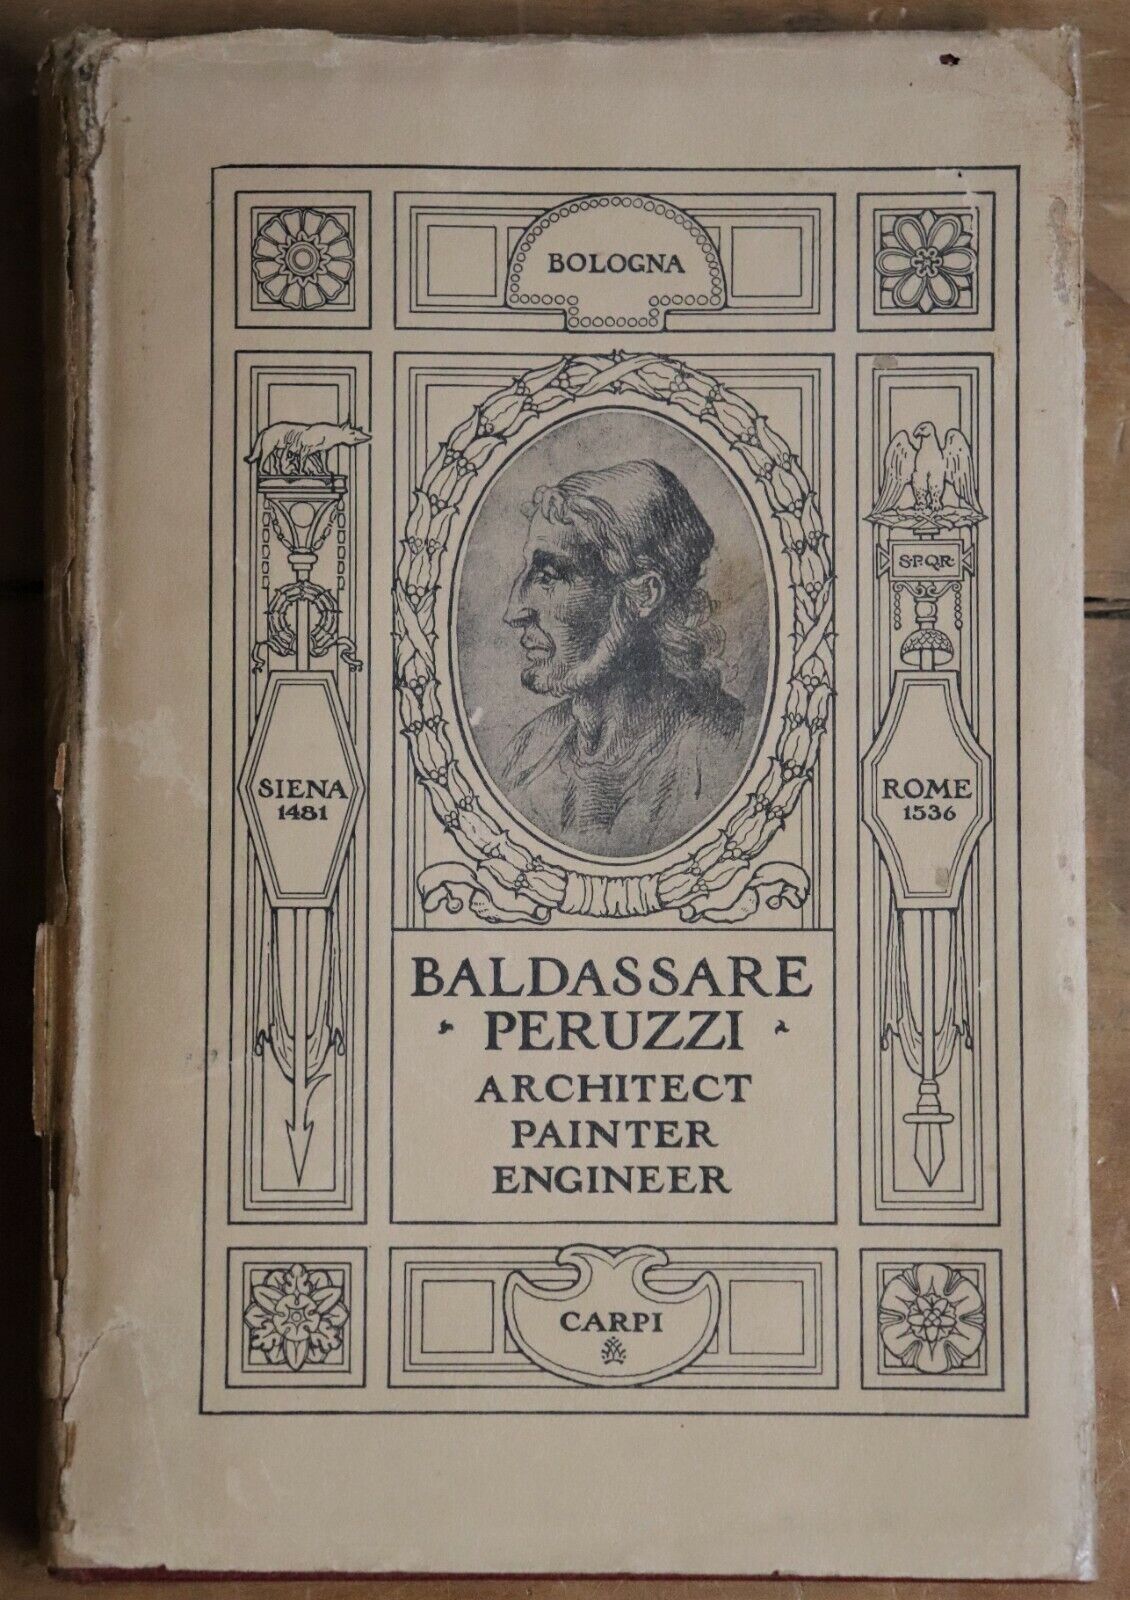 The Life & Works Of Baldassare Peruzzi - 1925 - 1st Edition Architecture Book